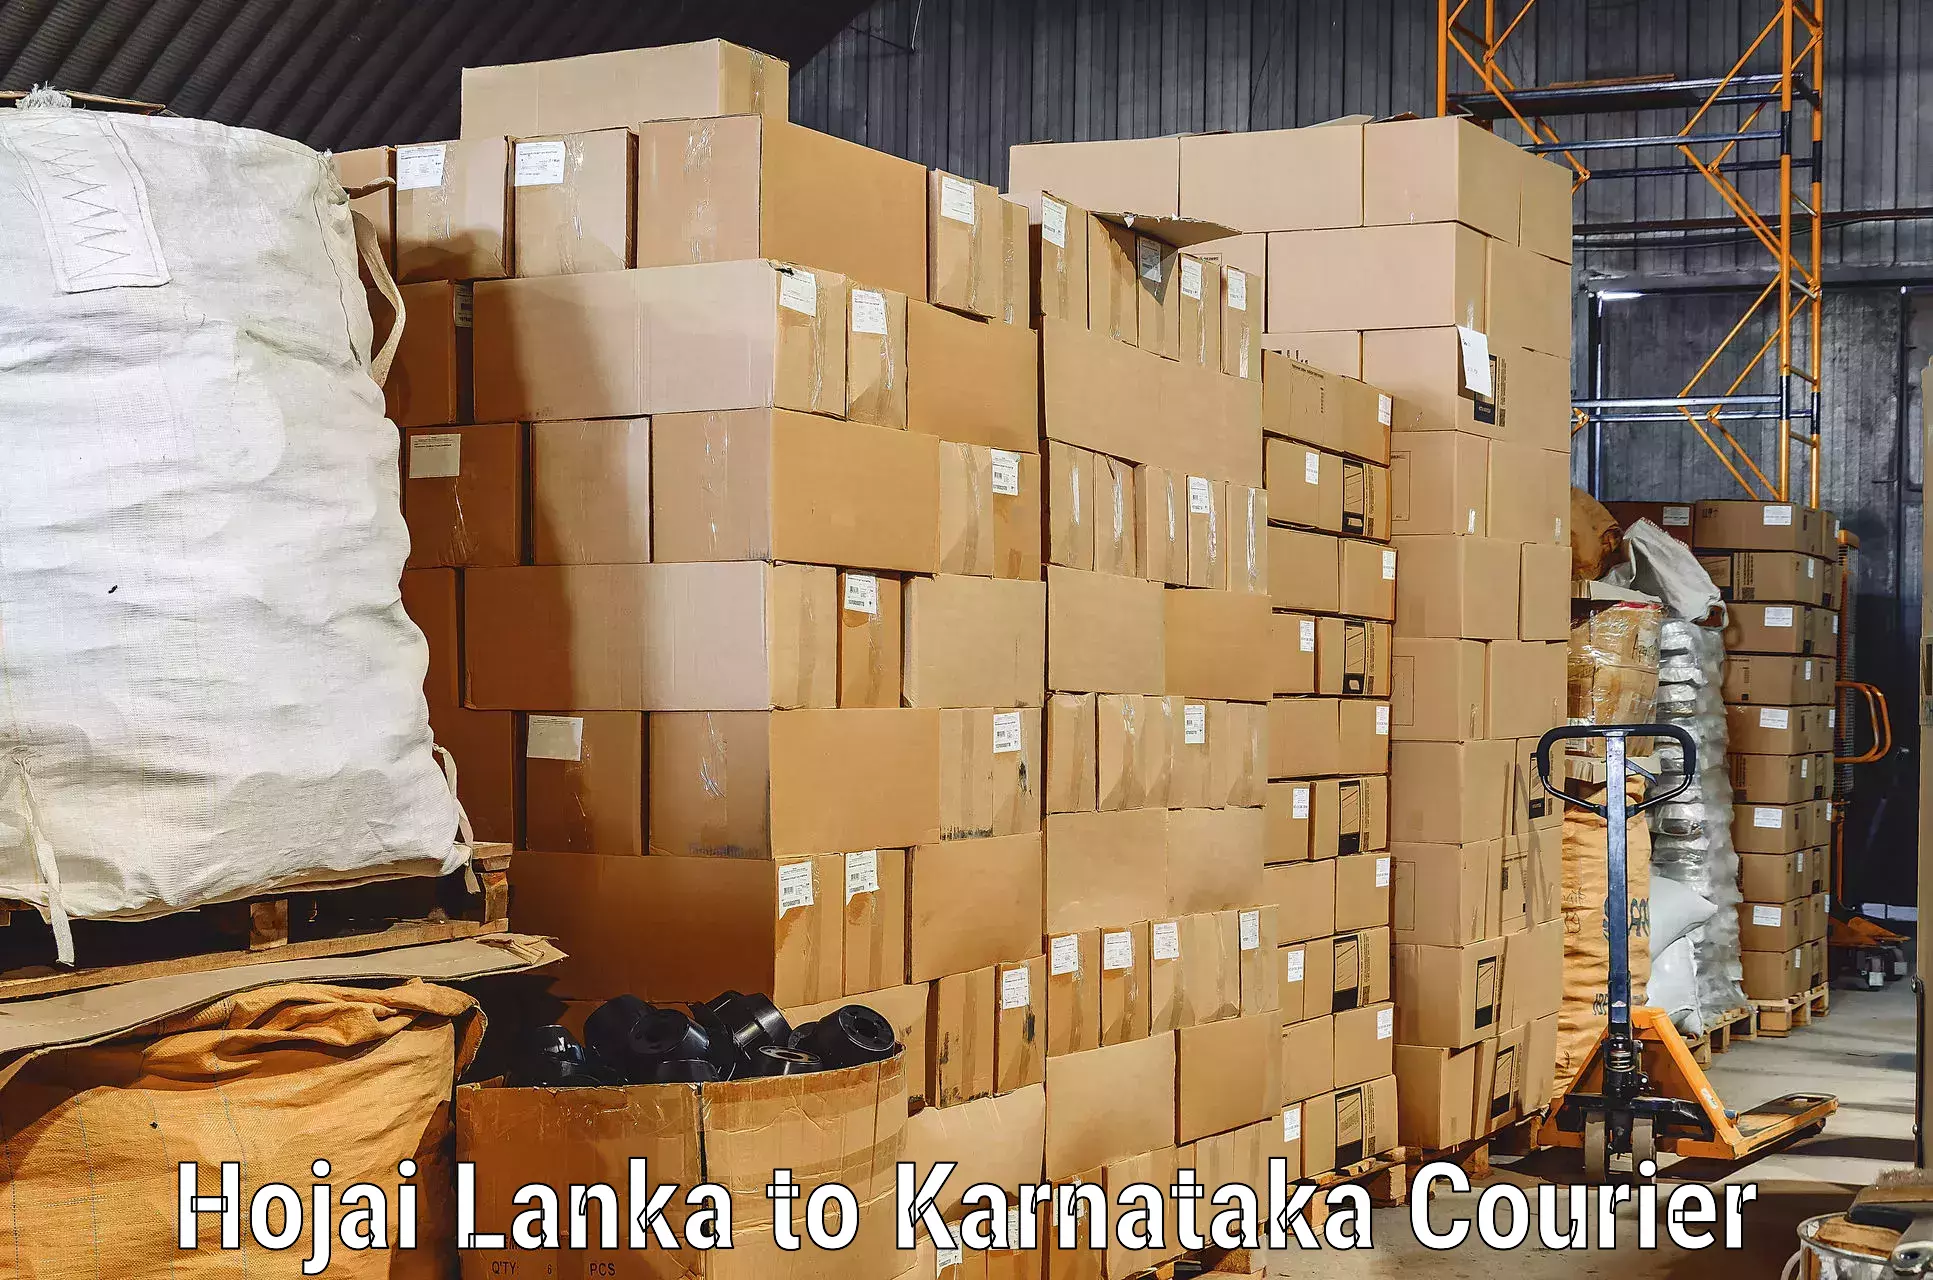 Reliable home moving Hojai Lanka to Rattihalli